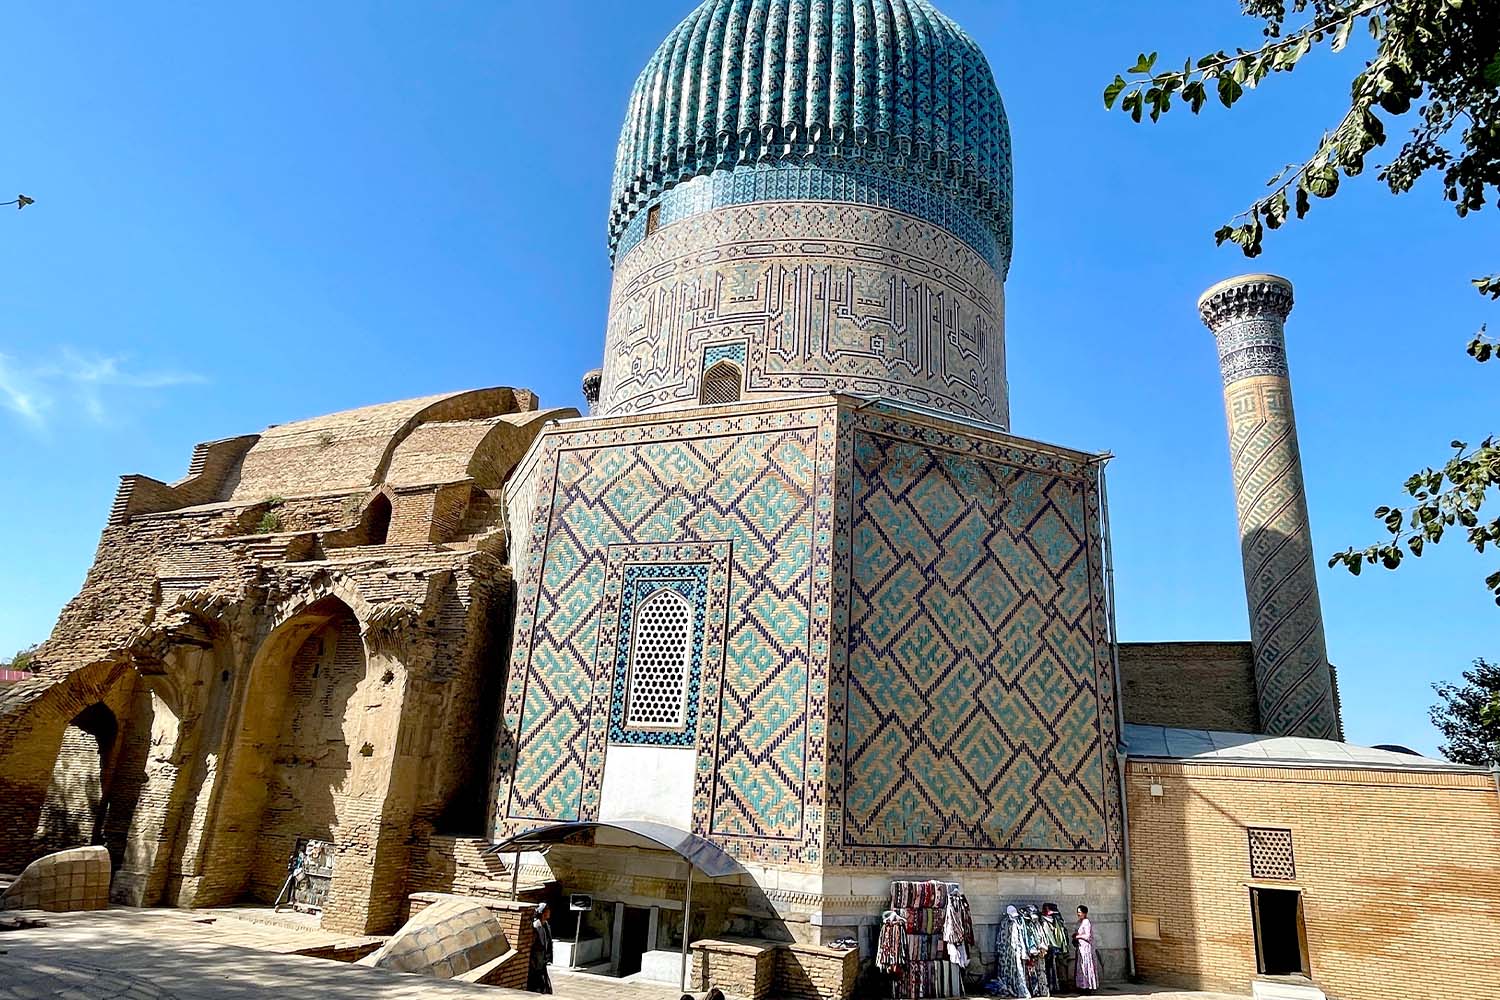 Like many monuments in Uzbekistan, Gur-e-Amir is a restoration work in progress